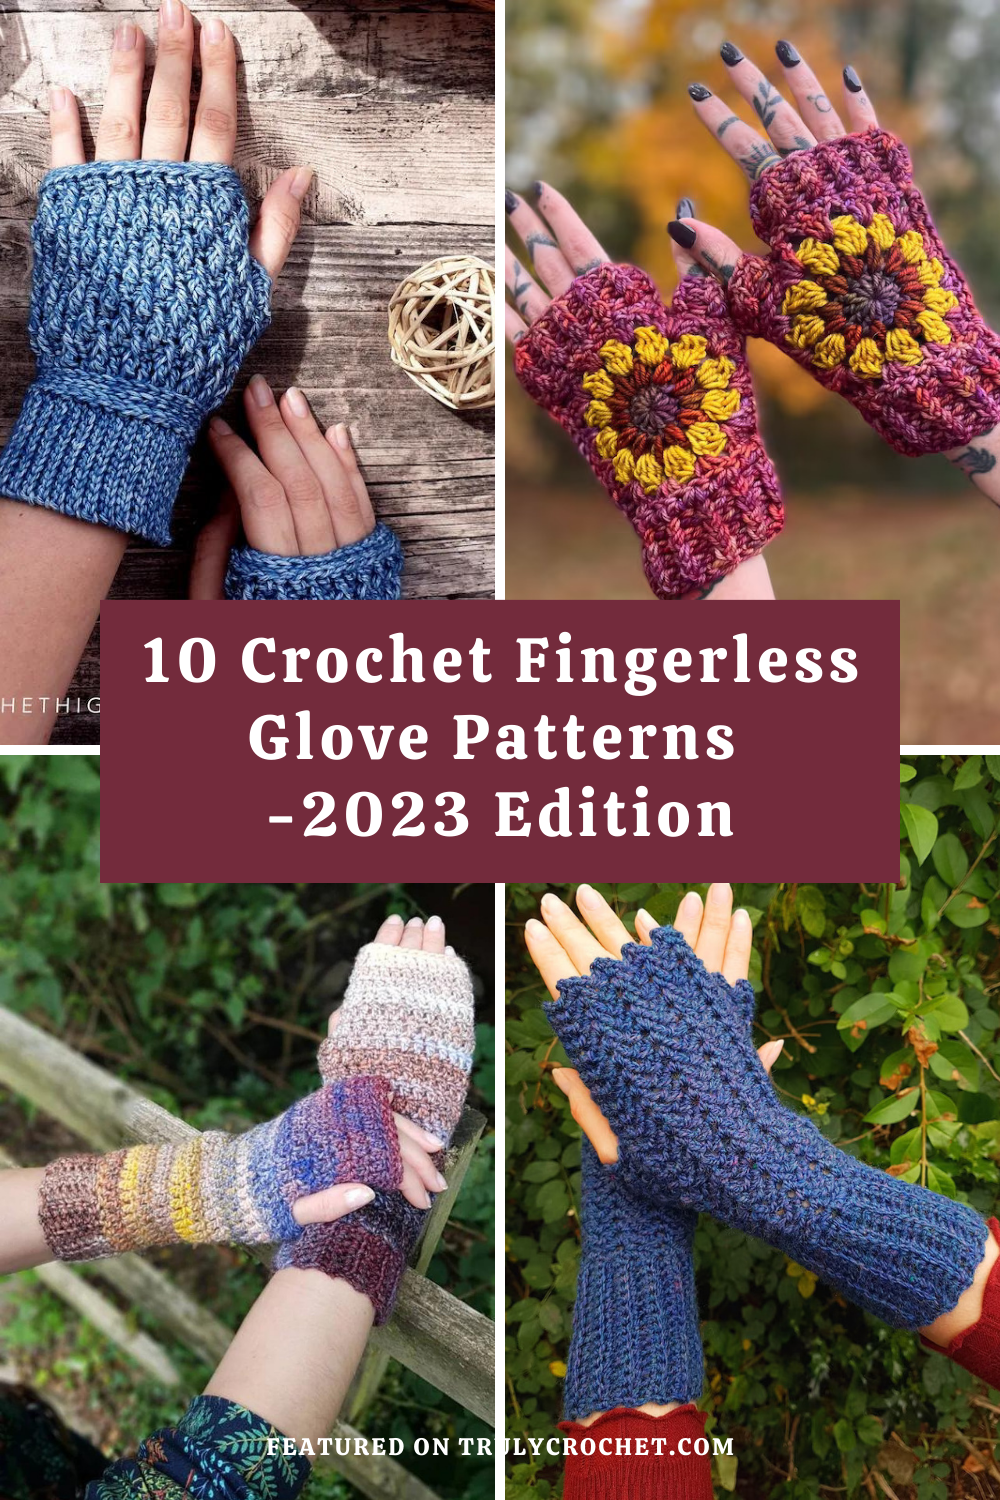 10 Crochet Fingerless Glove Patterns - 2023 edition